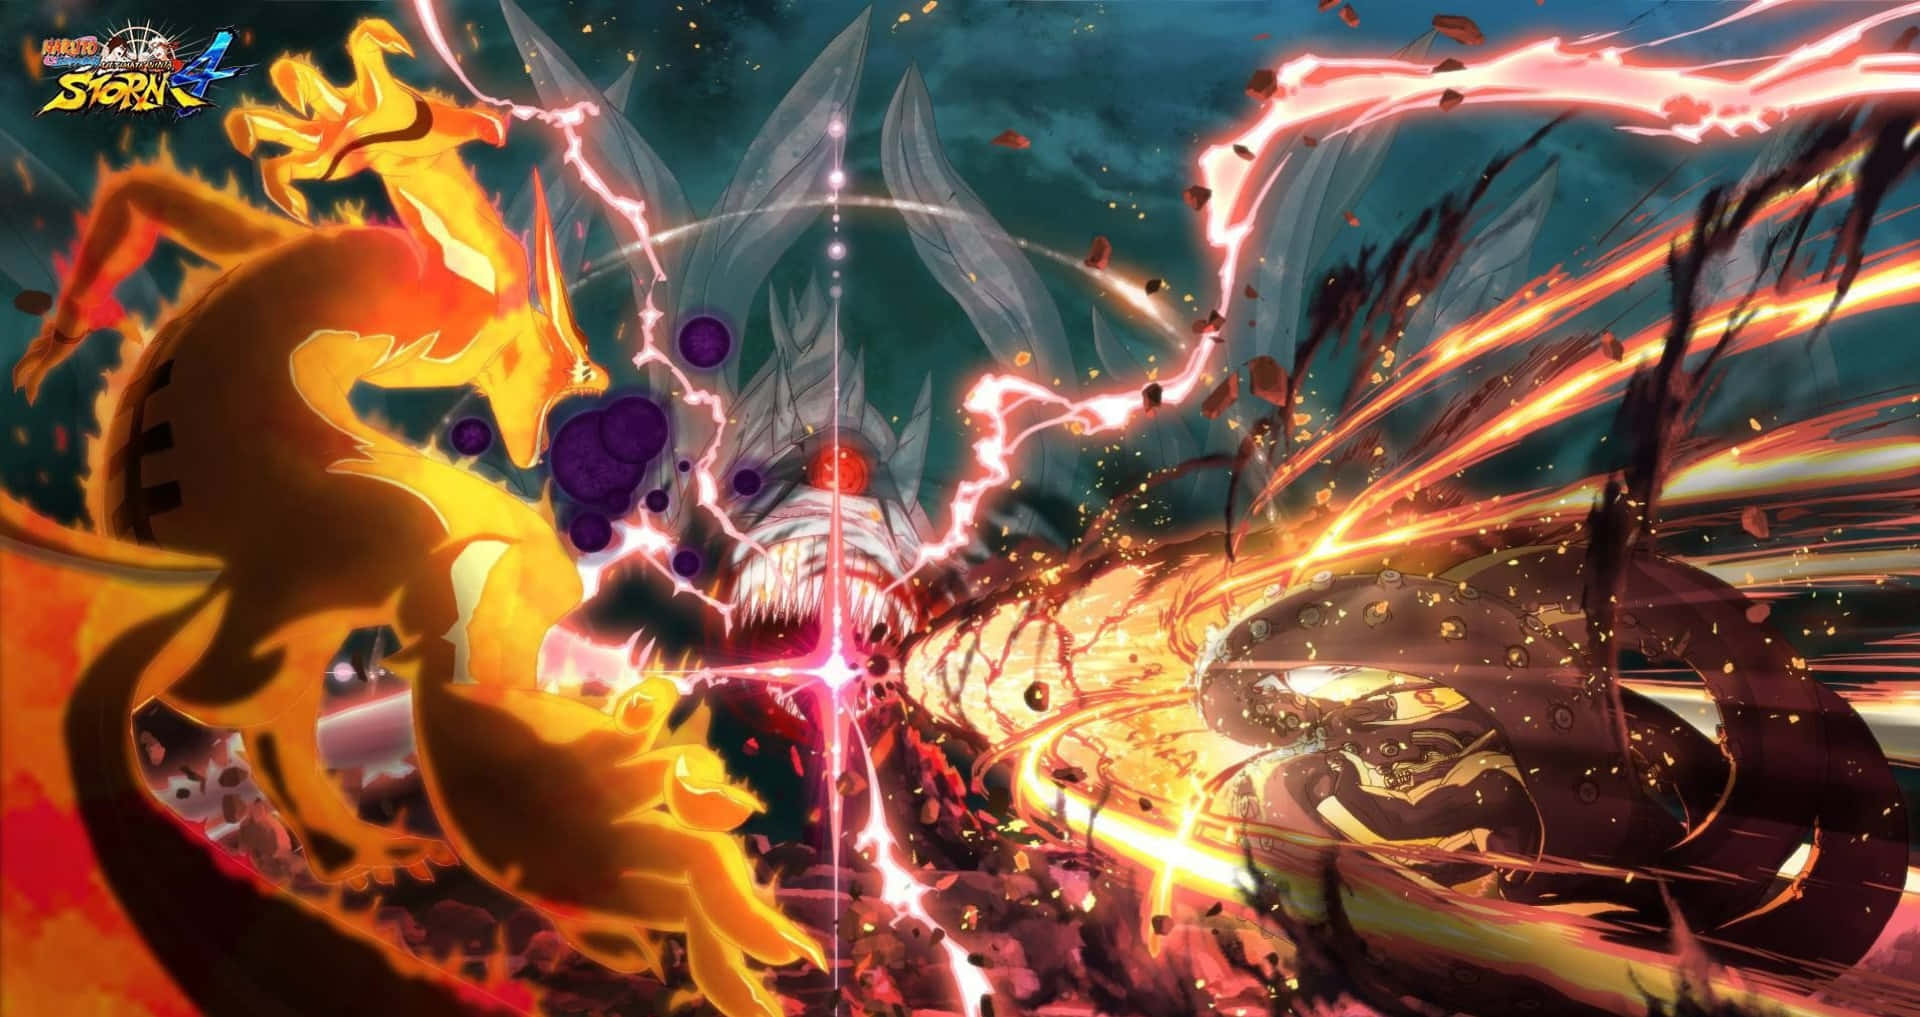 Gördig Redo För Episka Äventyr I Naruto-världen På Playstation 4. Wallpaper